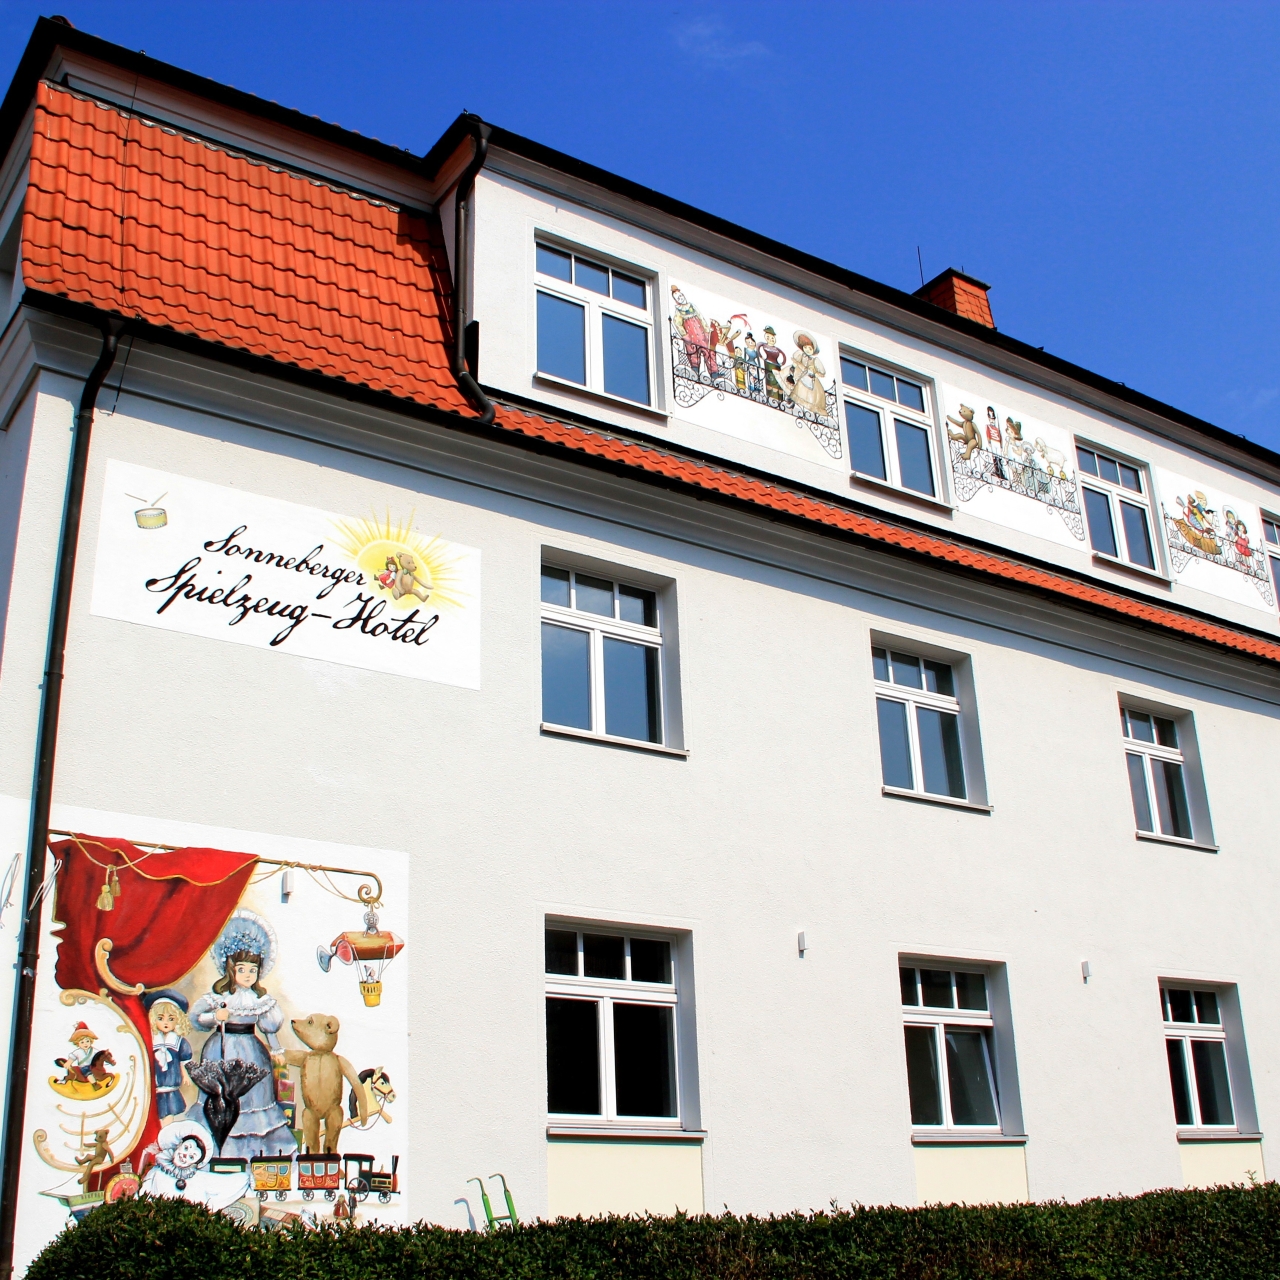 Spielzeug Hotel Sonneberg - 3 HRS star hotel in Sonneberg (Thuringia)